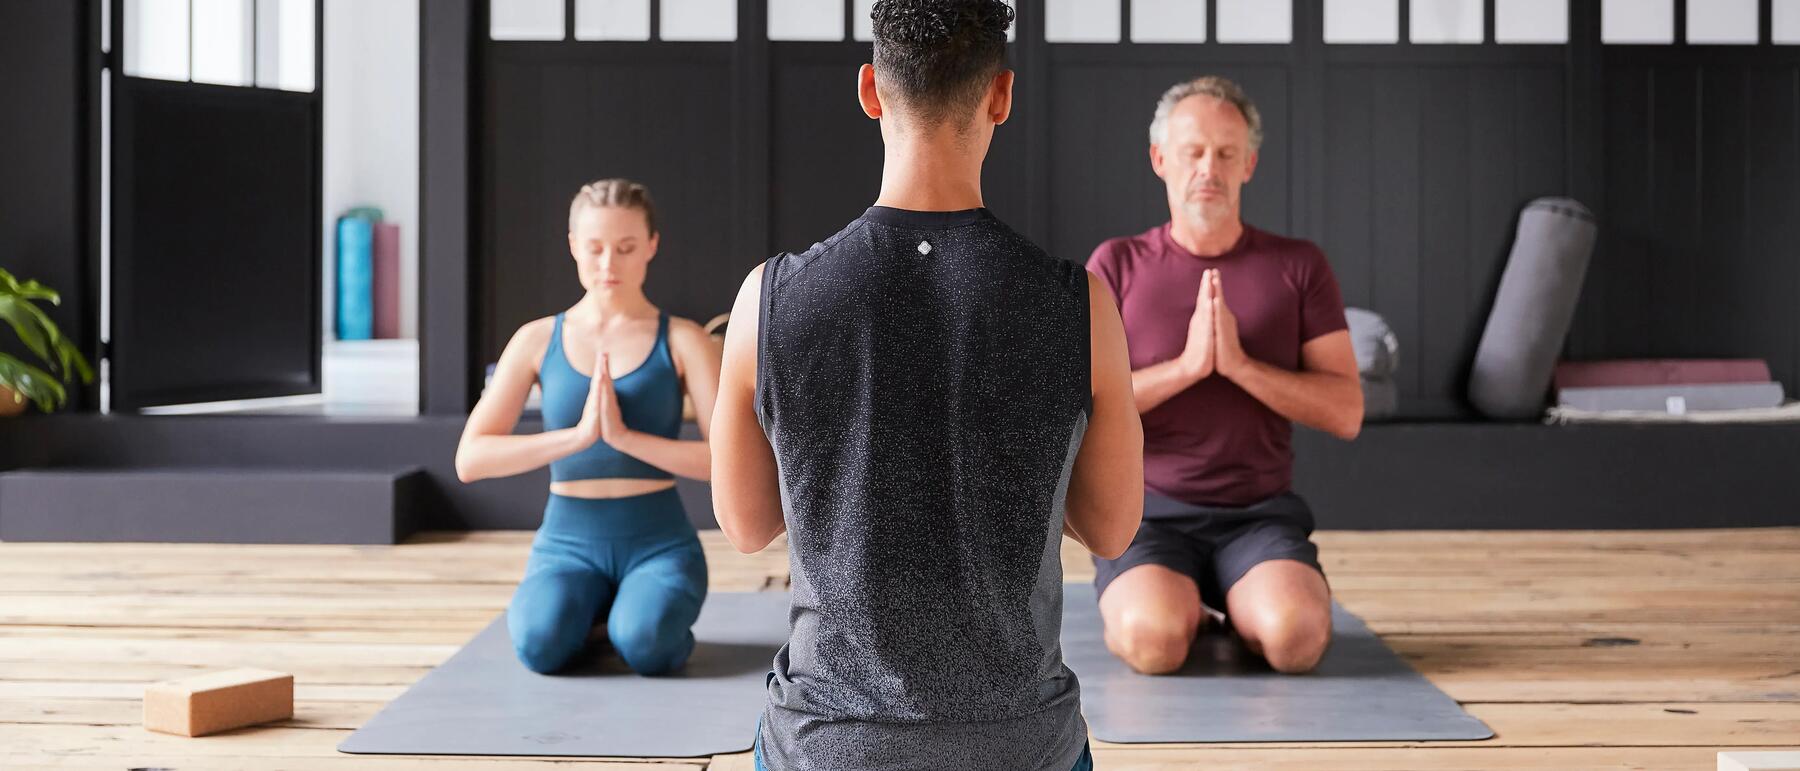 Bild von zwei Männern und einer Frau, die Yoga machen. Einer der Männer ist der Trainer.